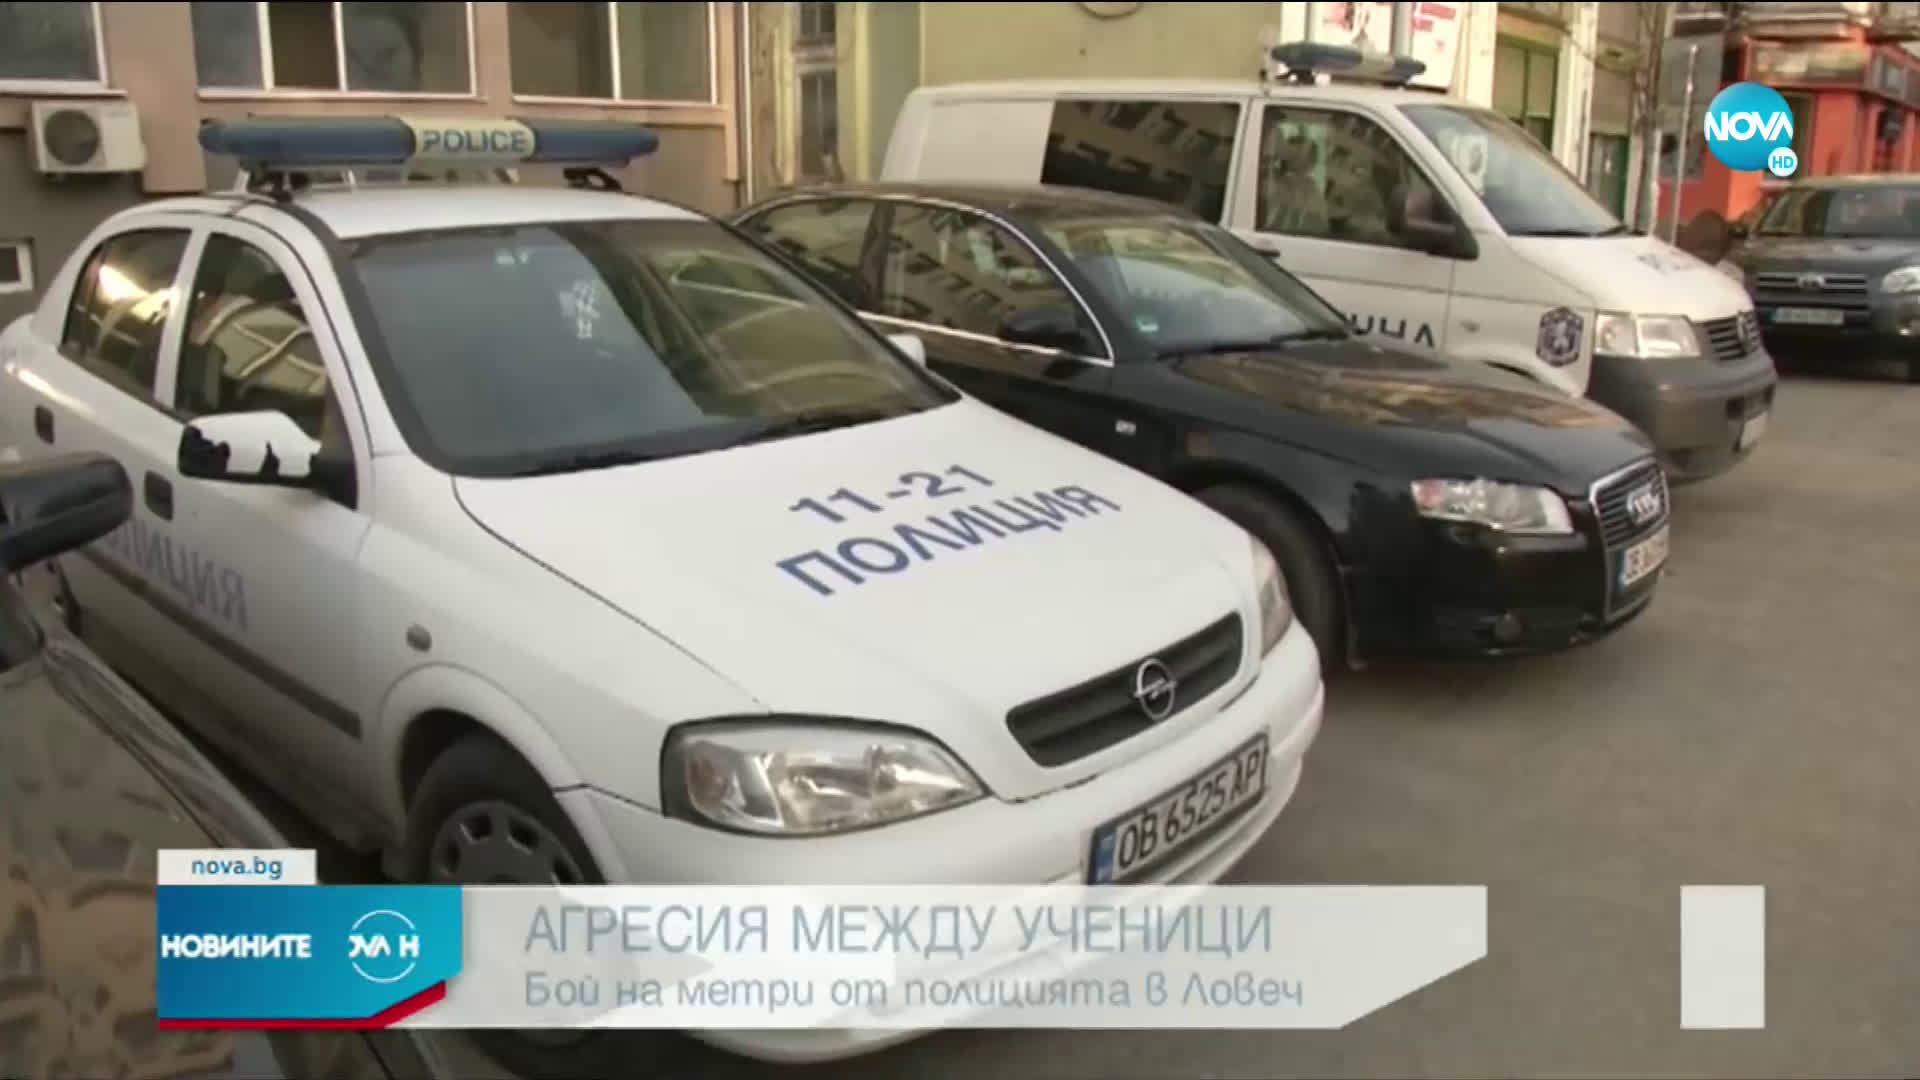 Сбиване между тийнейджъри посред бял ден на метри от полицията в Ловеч